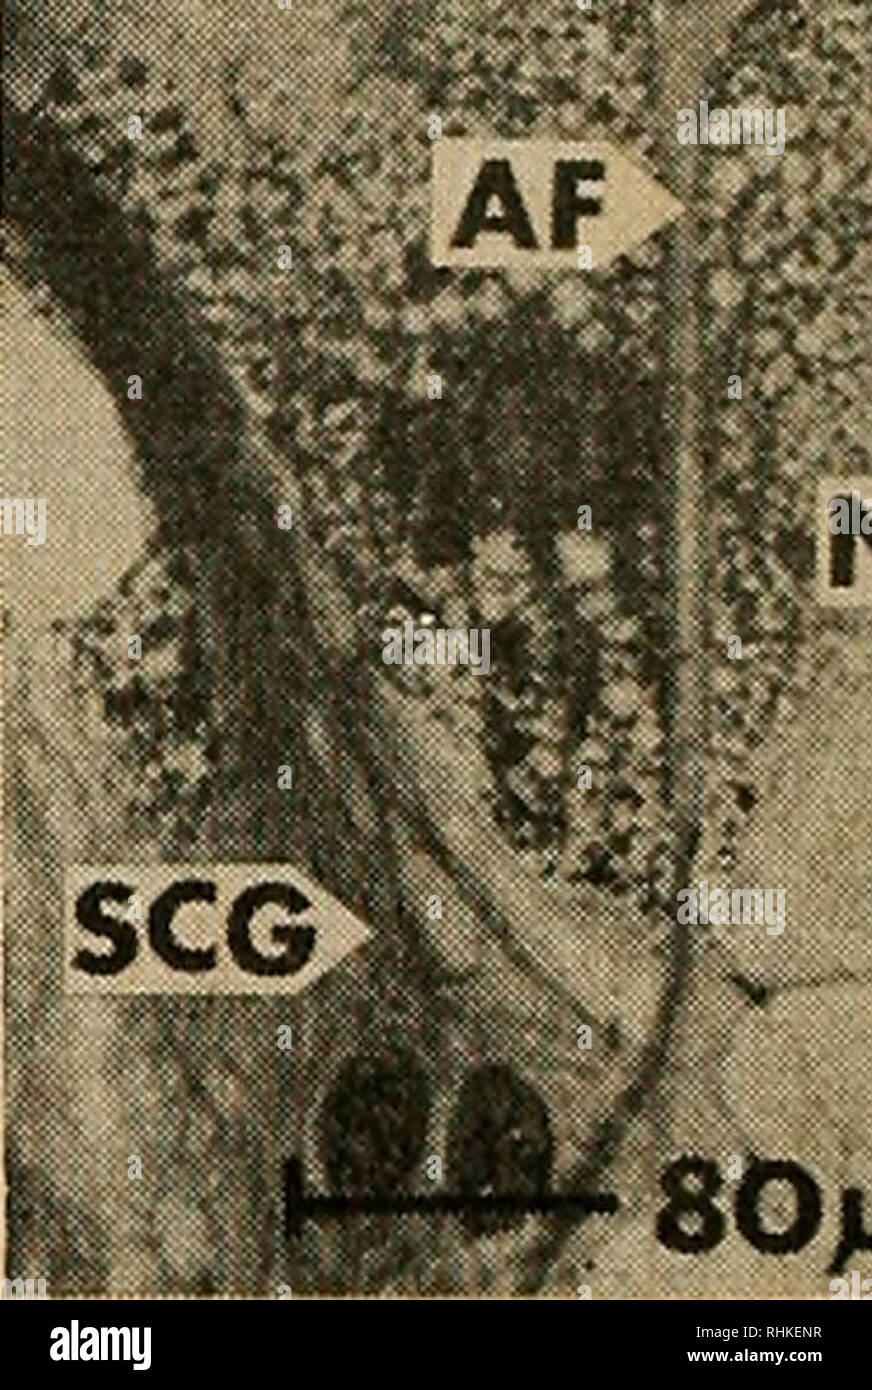 . Il bollettino biologico. Biologia; Zoologia; biologia marina. SGC 8. X NGC SOja 1 9 nella figura 5. Ponte di cella fra gamba rigenerare {h e gangliun explanl (g) è sviluppare- ing. Schwann allungata simile a cellule gliali (SGC) granulo e riempito di tipo nutritiva cellule gliali (NGC) stanno emergendo da espianti. Che cosa può essere una guaina cella (SC) è visto vicino ganglio espianto. La parte centrale del ponte (cb) sembra essere costituito da una miscela di sangue, gliali, e le cellule epiteliali. In vitro 34 giorni; contrasto scuro fase. La figura 6. La degenerazione del sangue e delle cellule epiteliali (BEE) nelle antiche culture espone t Foto Stock